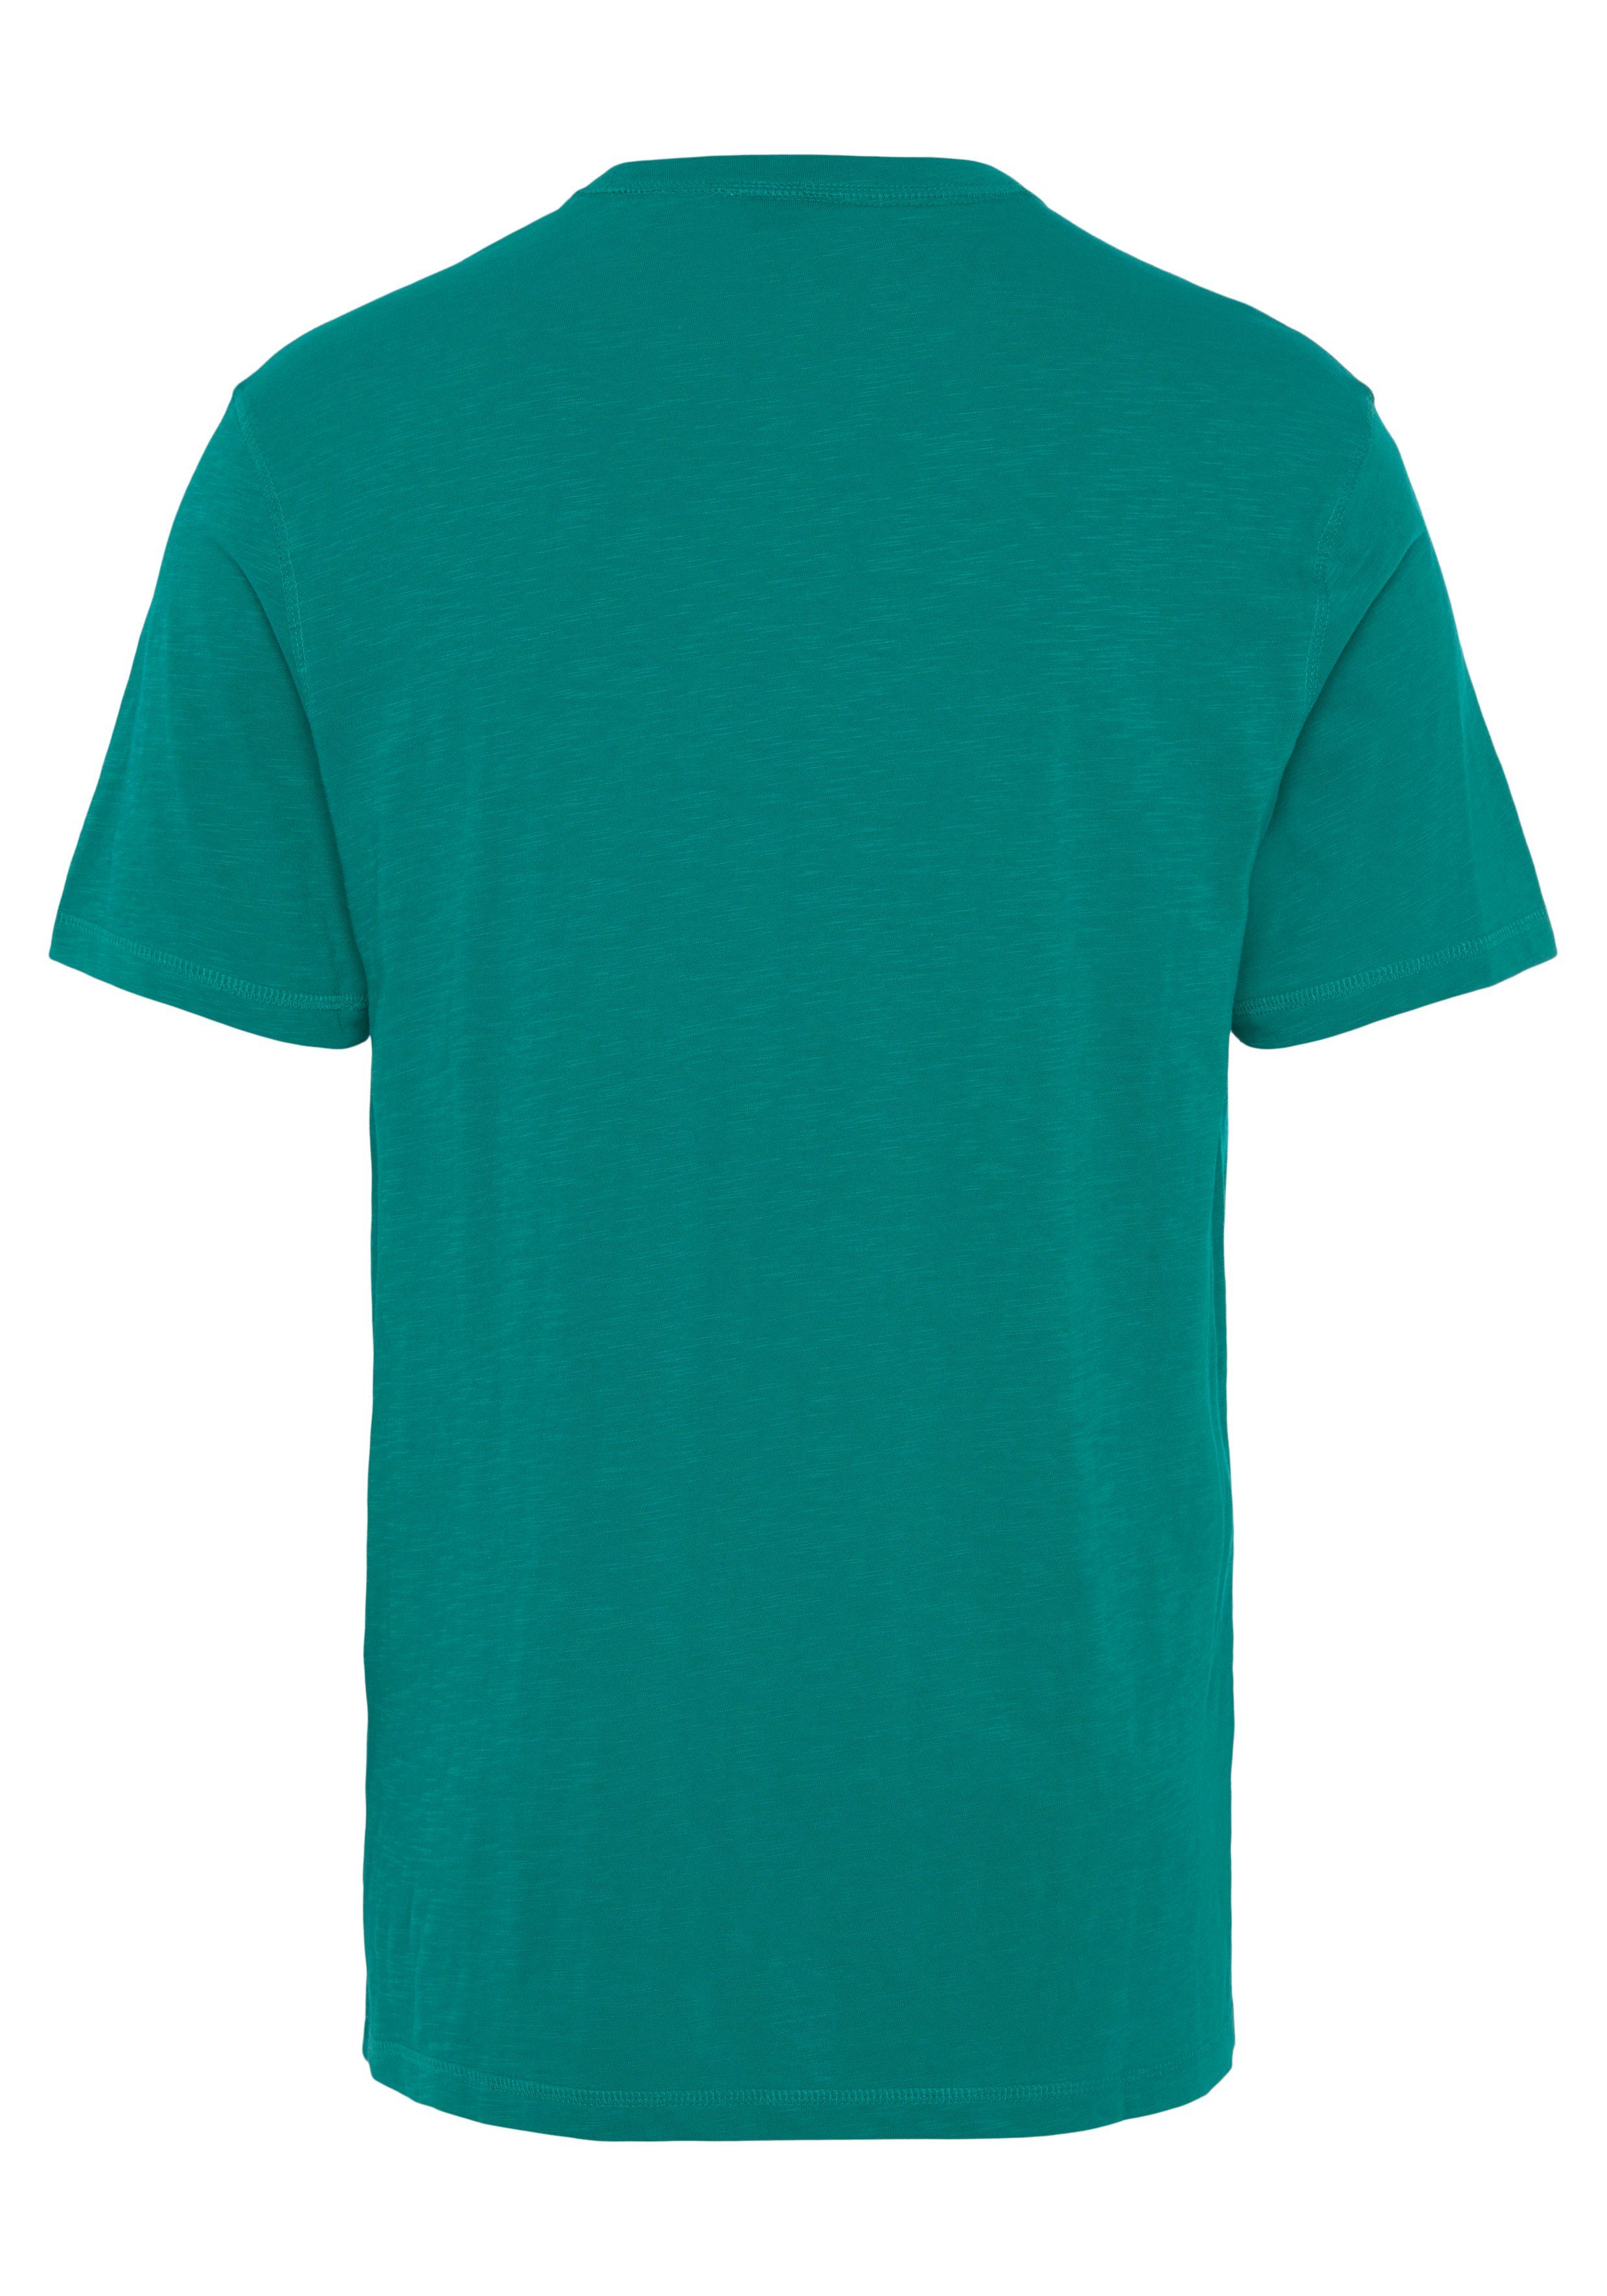 der BOSS T-Shirt Dark Tegood auf ORANGE BOSS Brust mit Green303 Logo